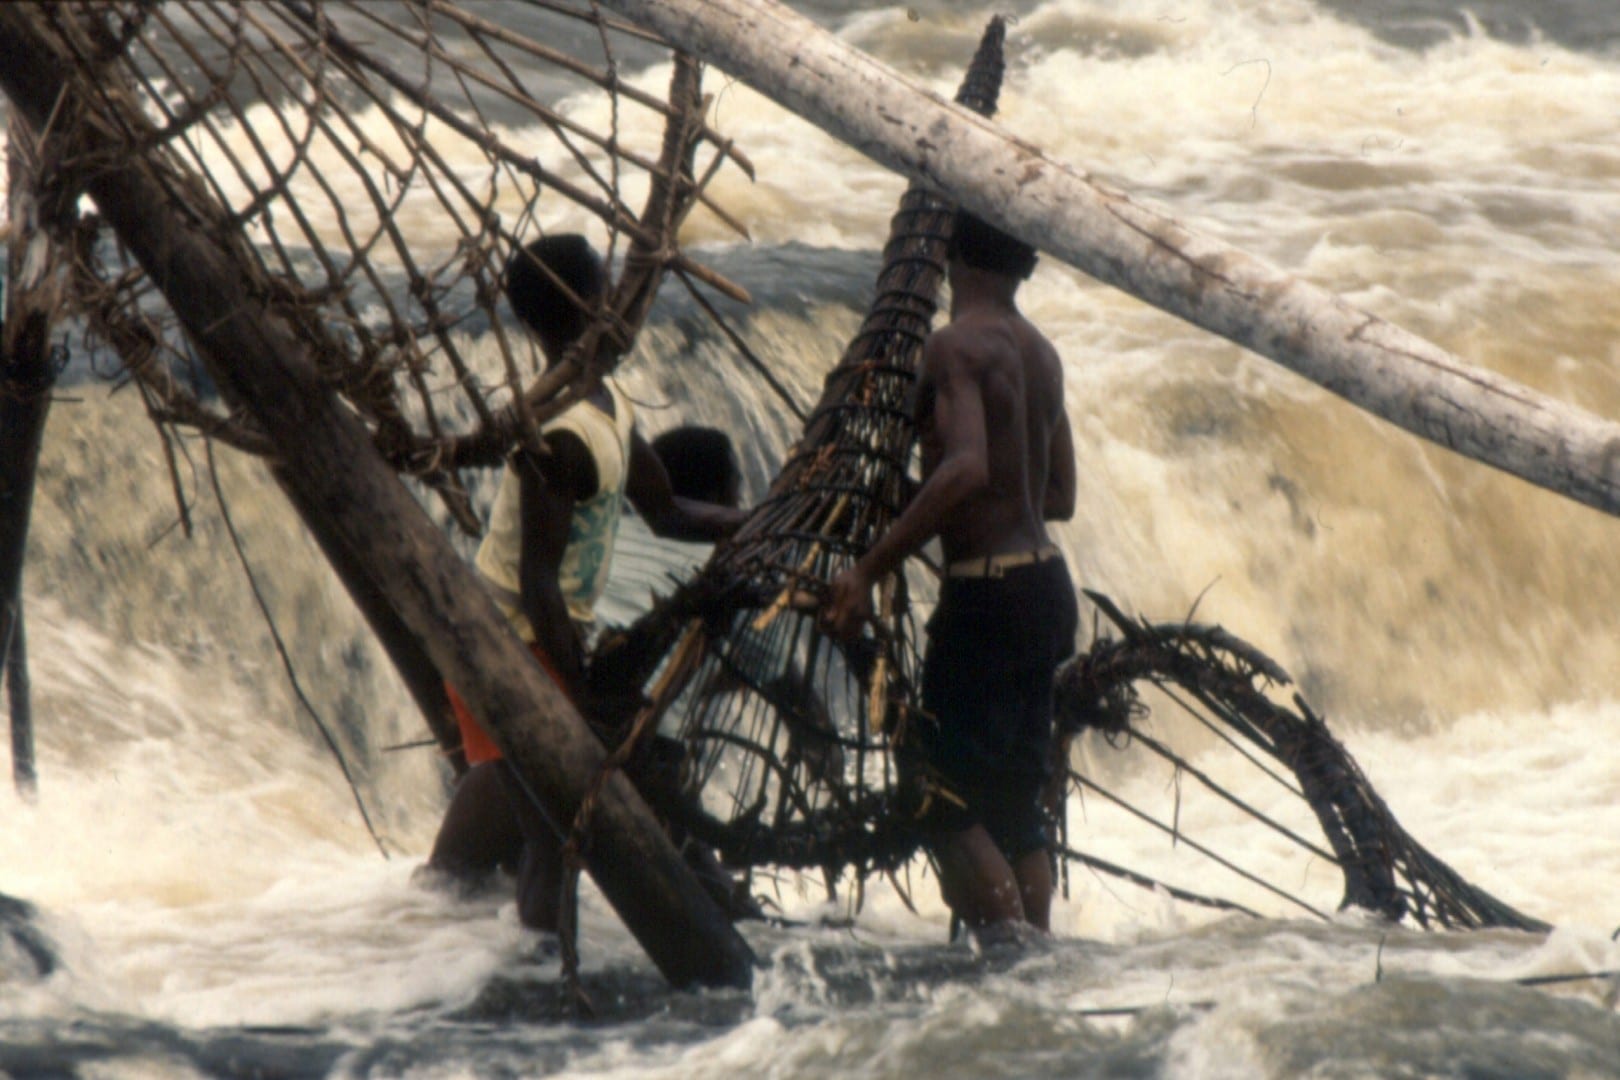 Pescadores de Wagenia con sus trampas de cesta cónica en las cataratas de Boyoma. Congo (Rep. Dem.)